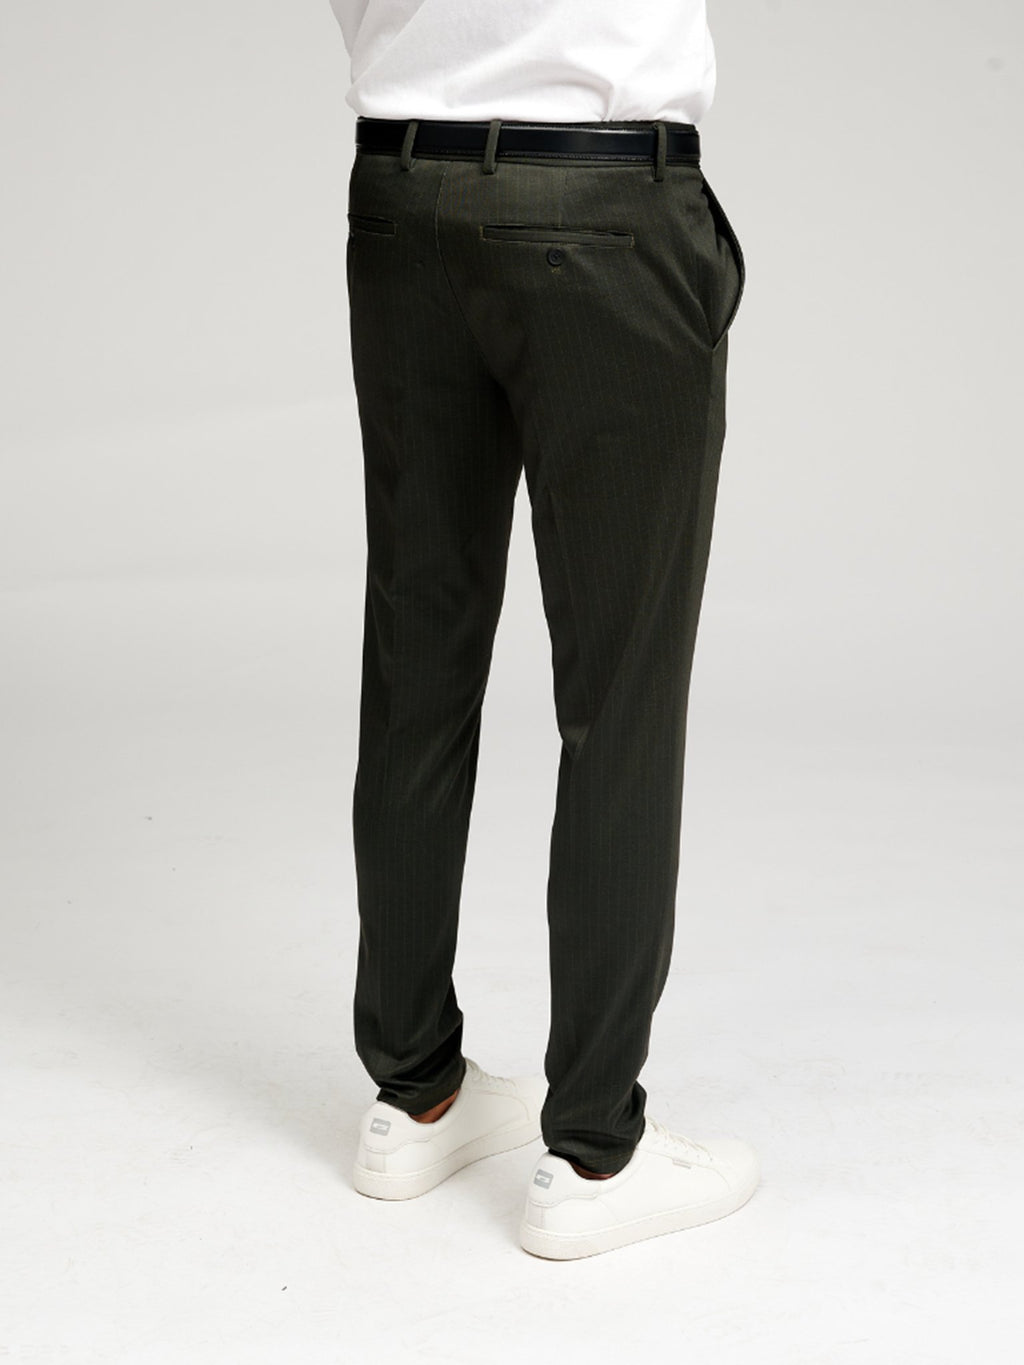 原始性能裤 - 深绿色条纹（有限）